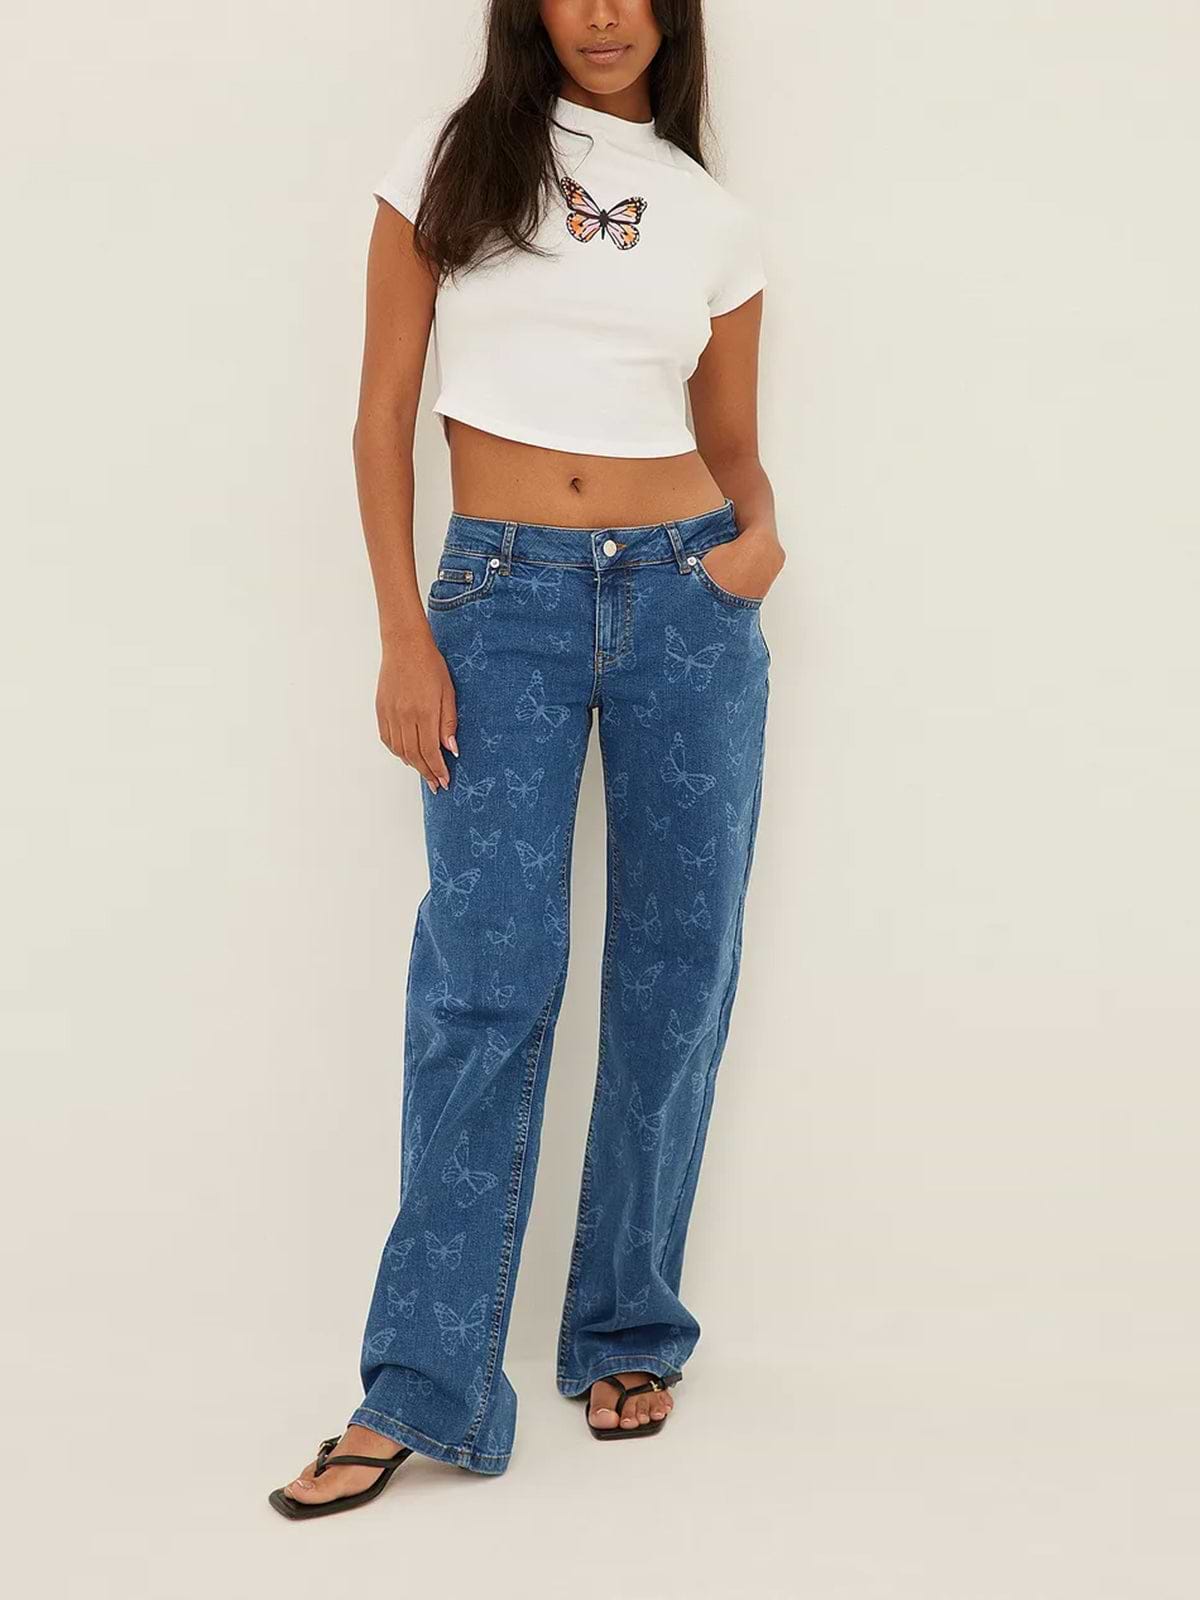 מכנסי ג'ינס בגזרה נמוכה עם הדפס פרפרים